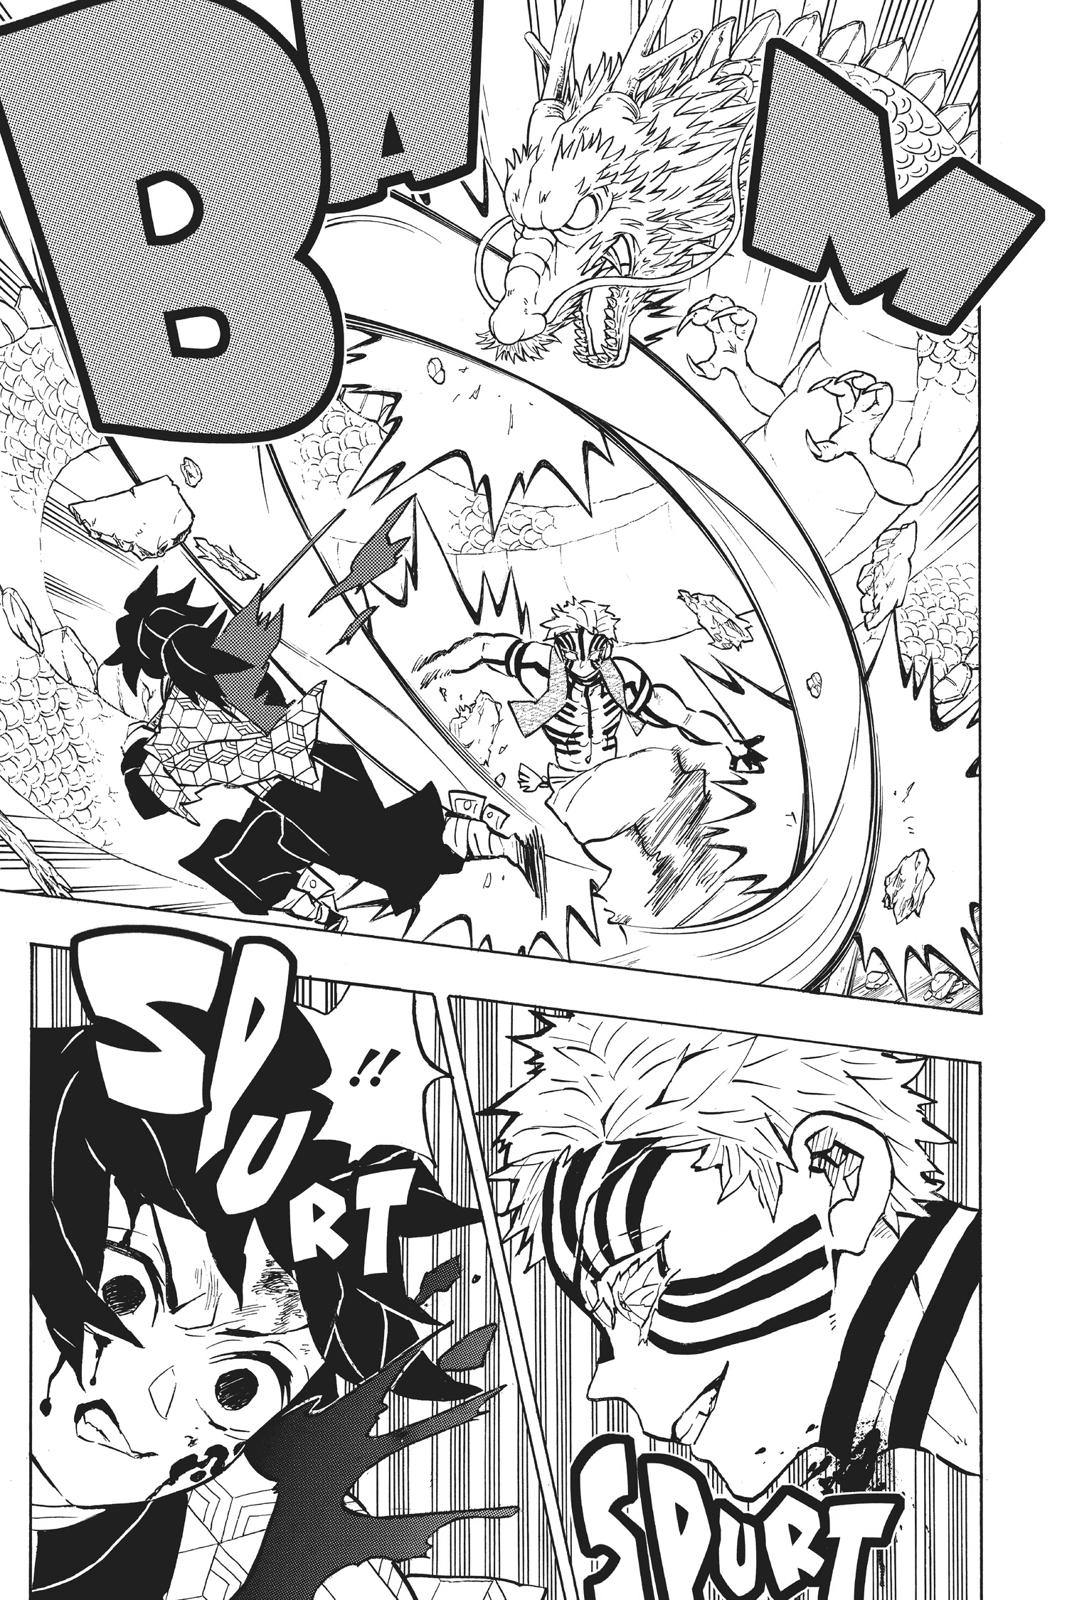 Demon Slayer Manga Manga Chapter - 152 - image 3